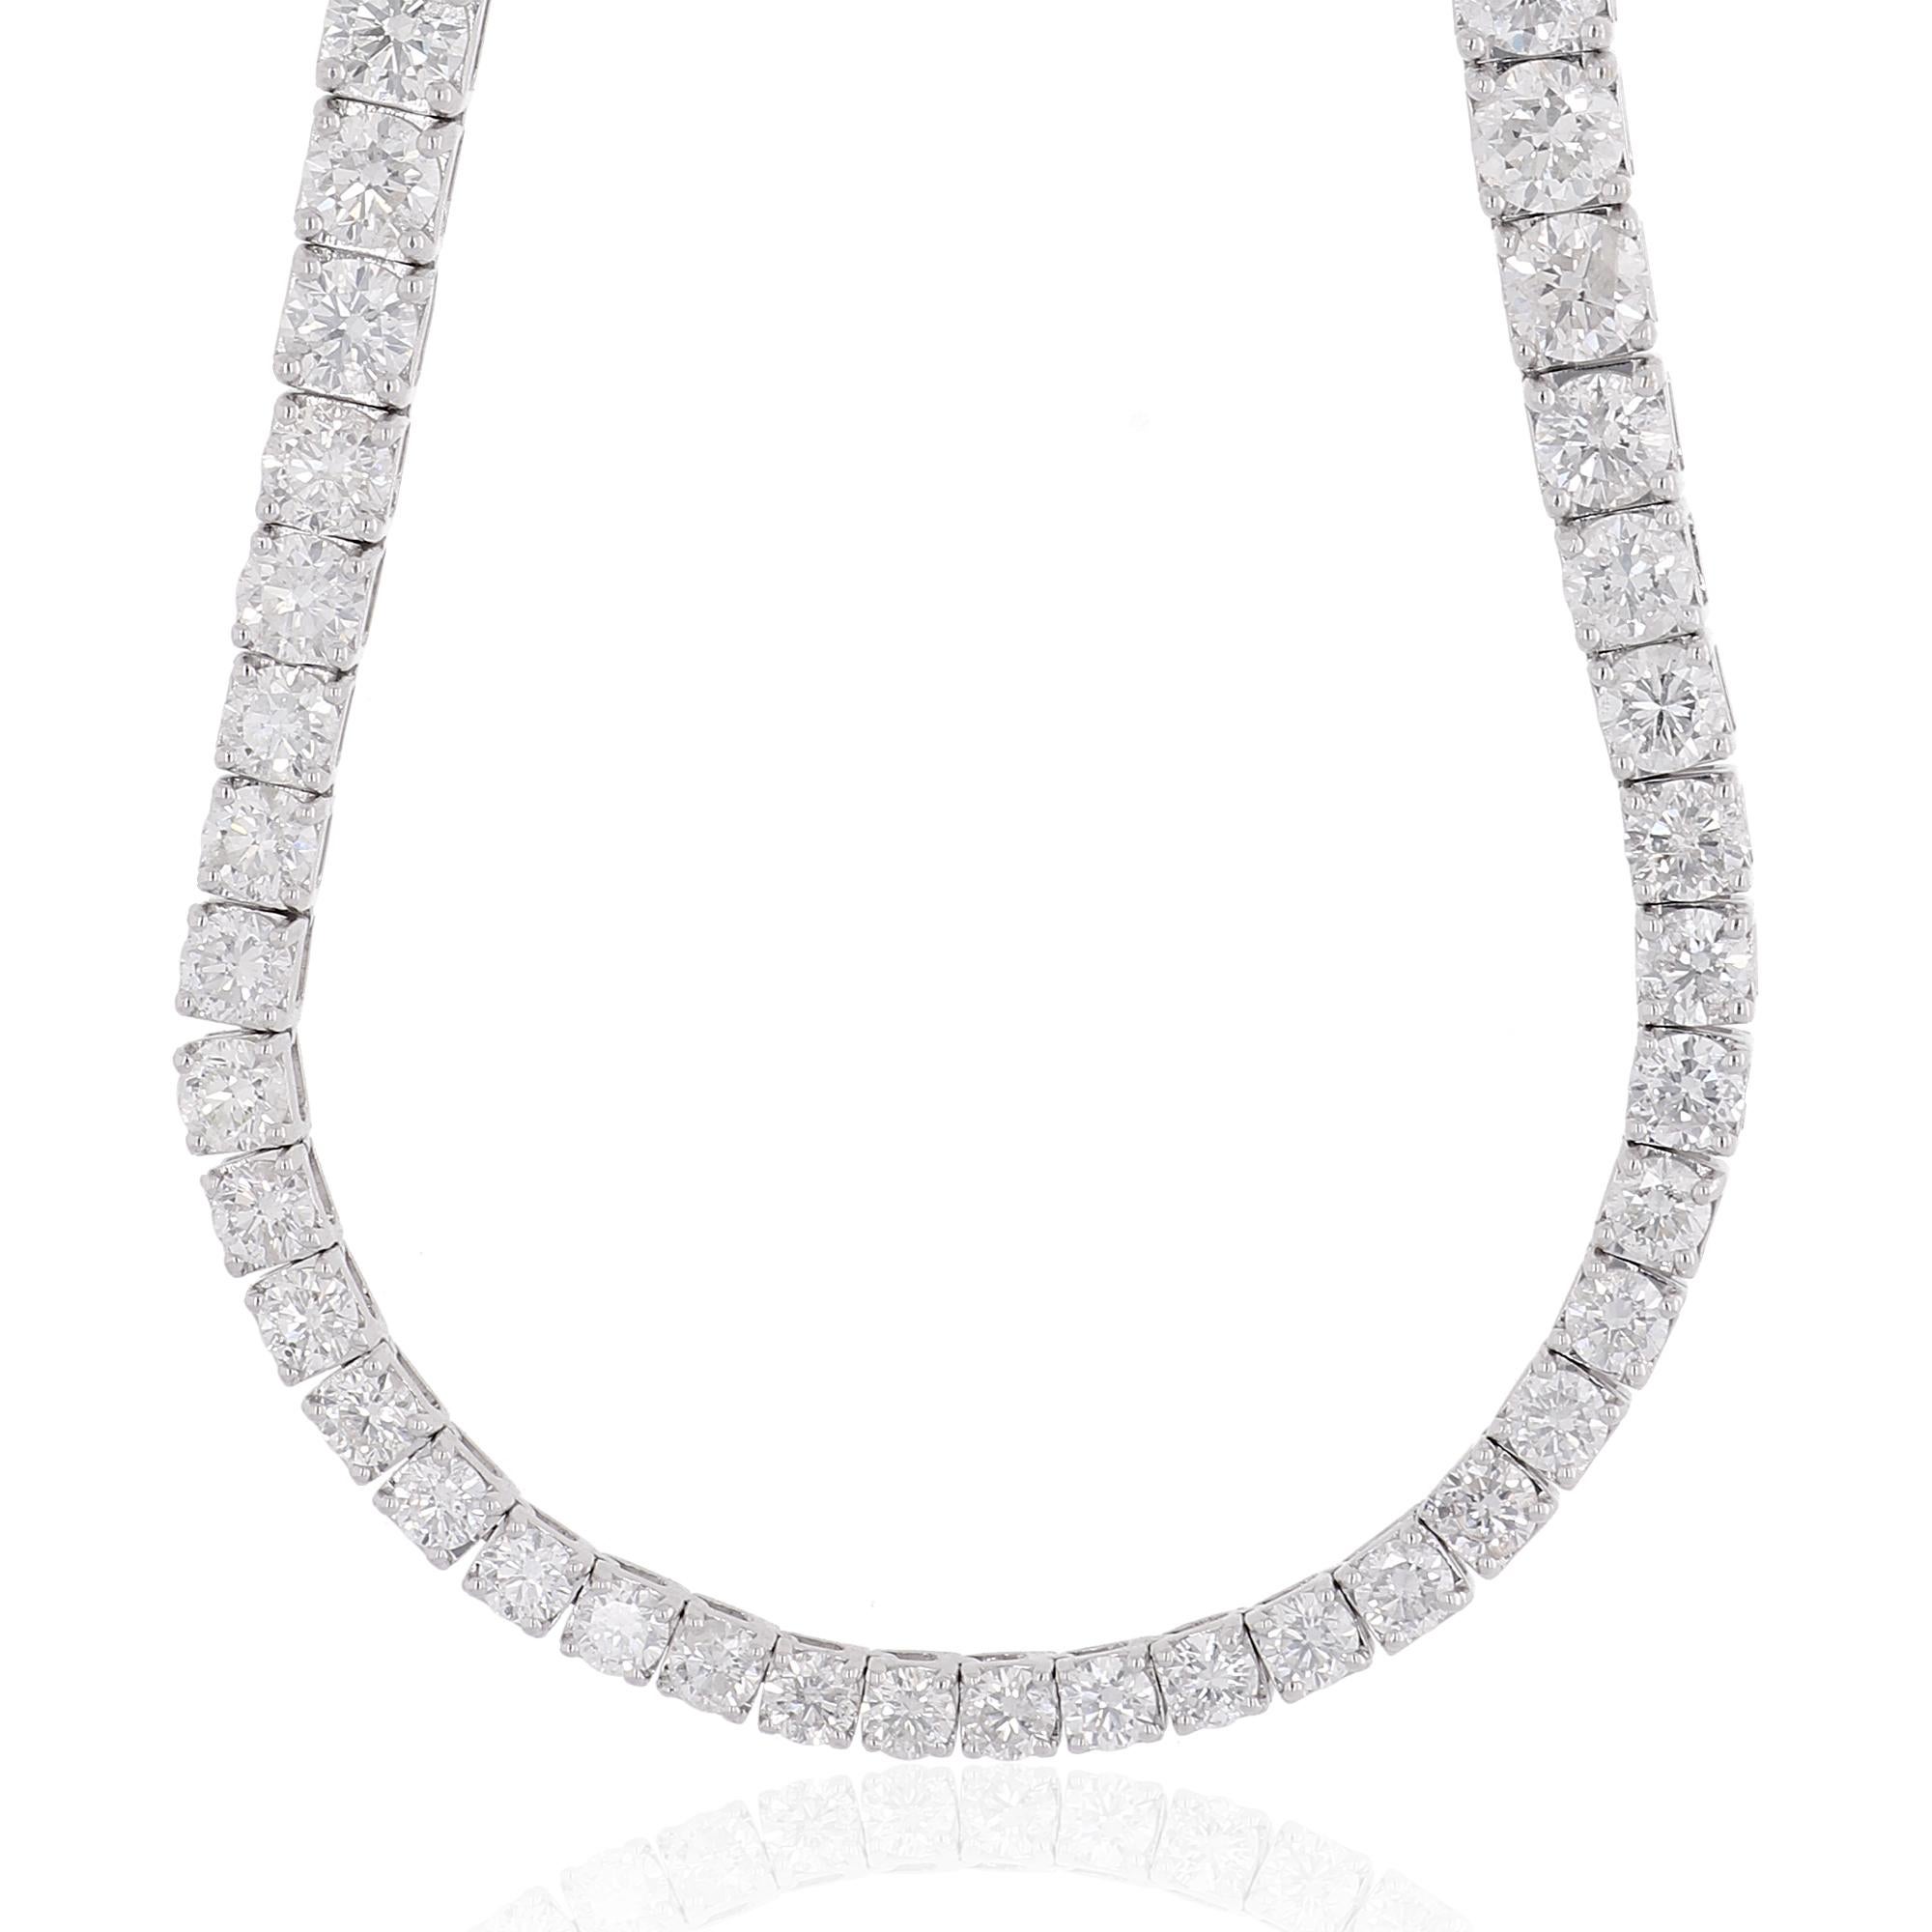 Au cœur de ce collier se trouve un magnifique arrangement de diamants ronds, totalisant un impressionnant 15,6 carats. Chaque diamant est sélectionné à la main pour sa clarté exceptionnelle, classée SI, ce qui garantit une transparence et une